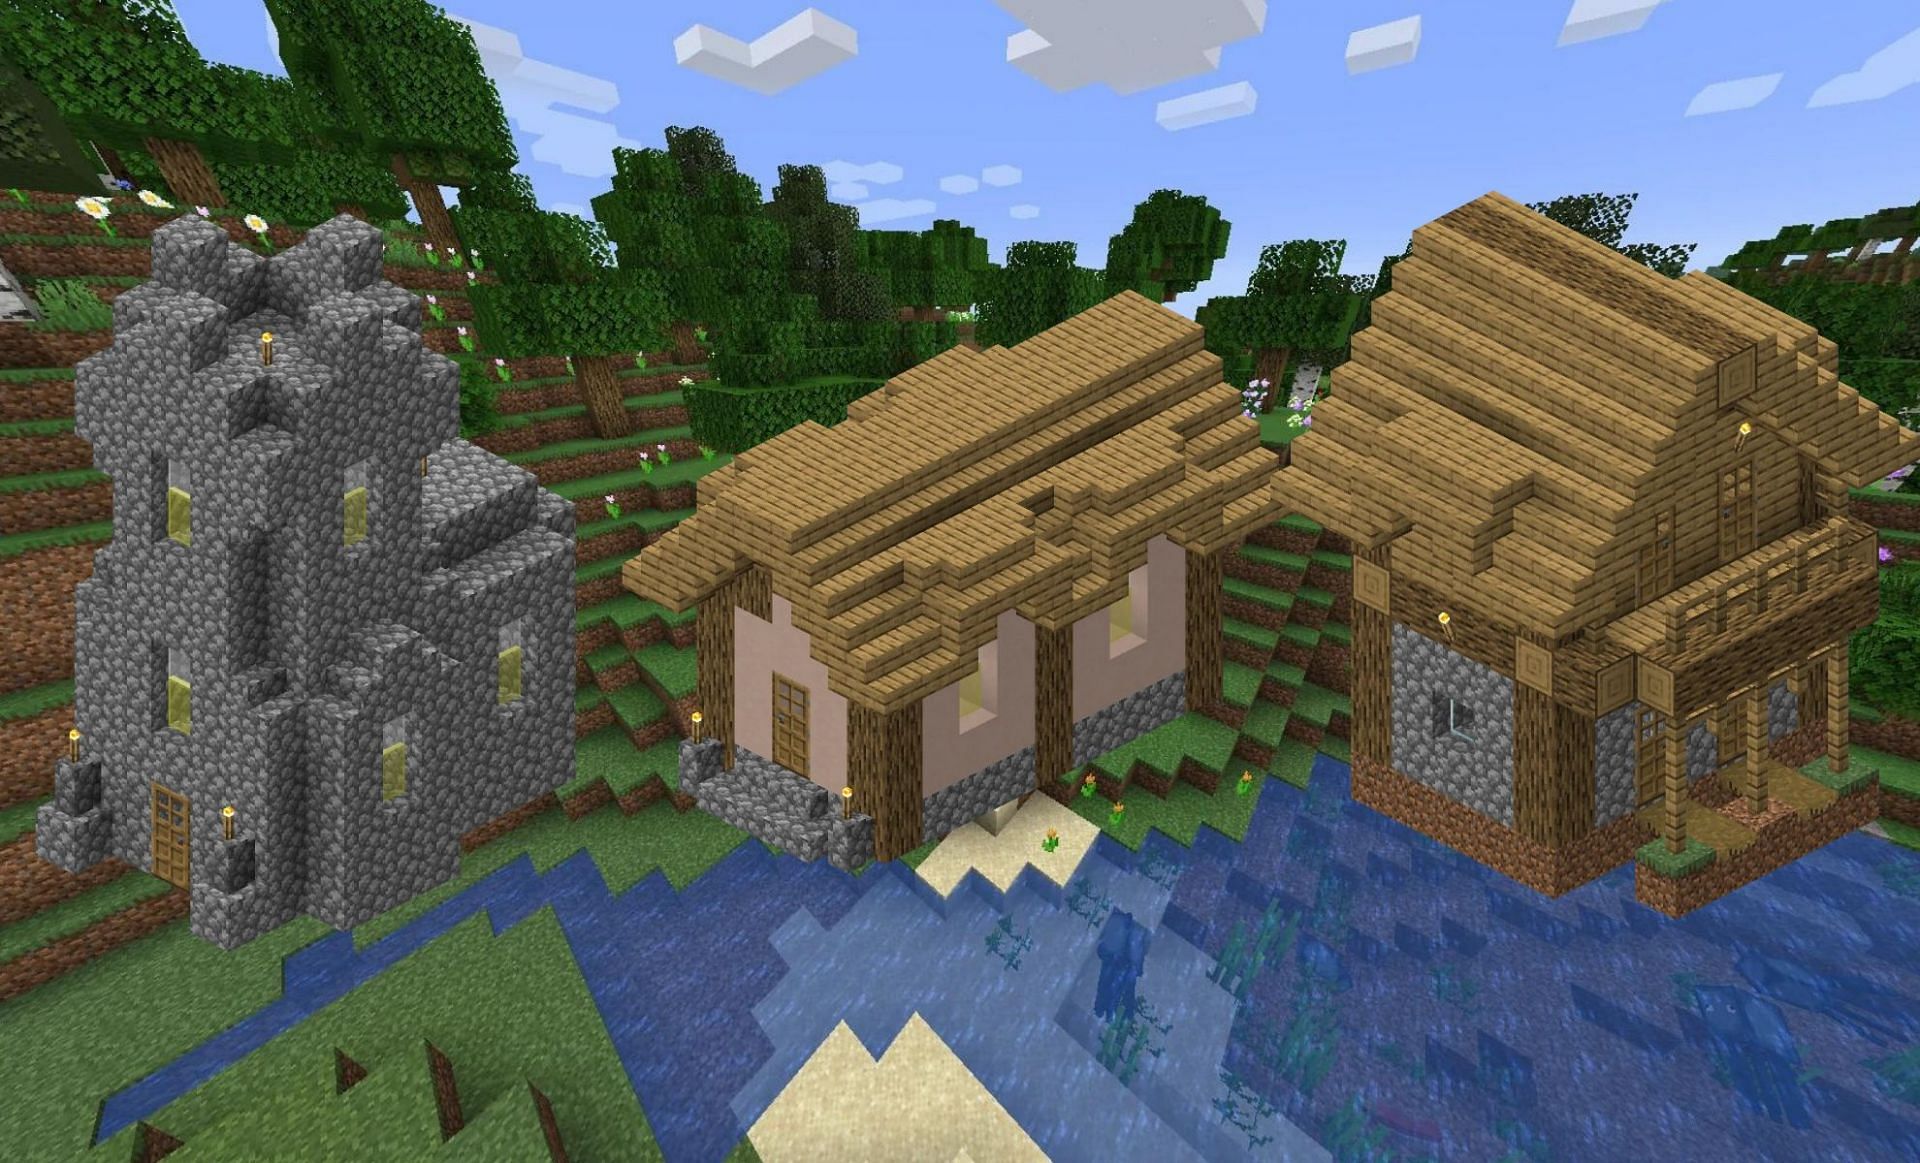 Villager house designs (Image via Minecraft Wiki)